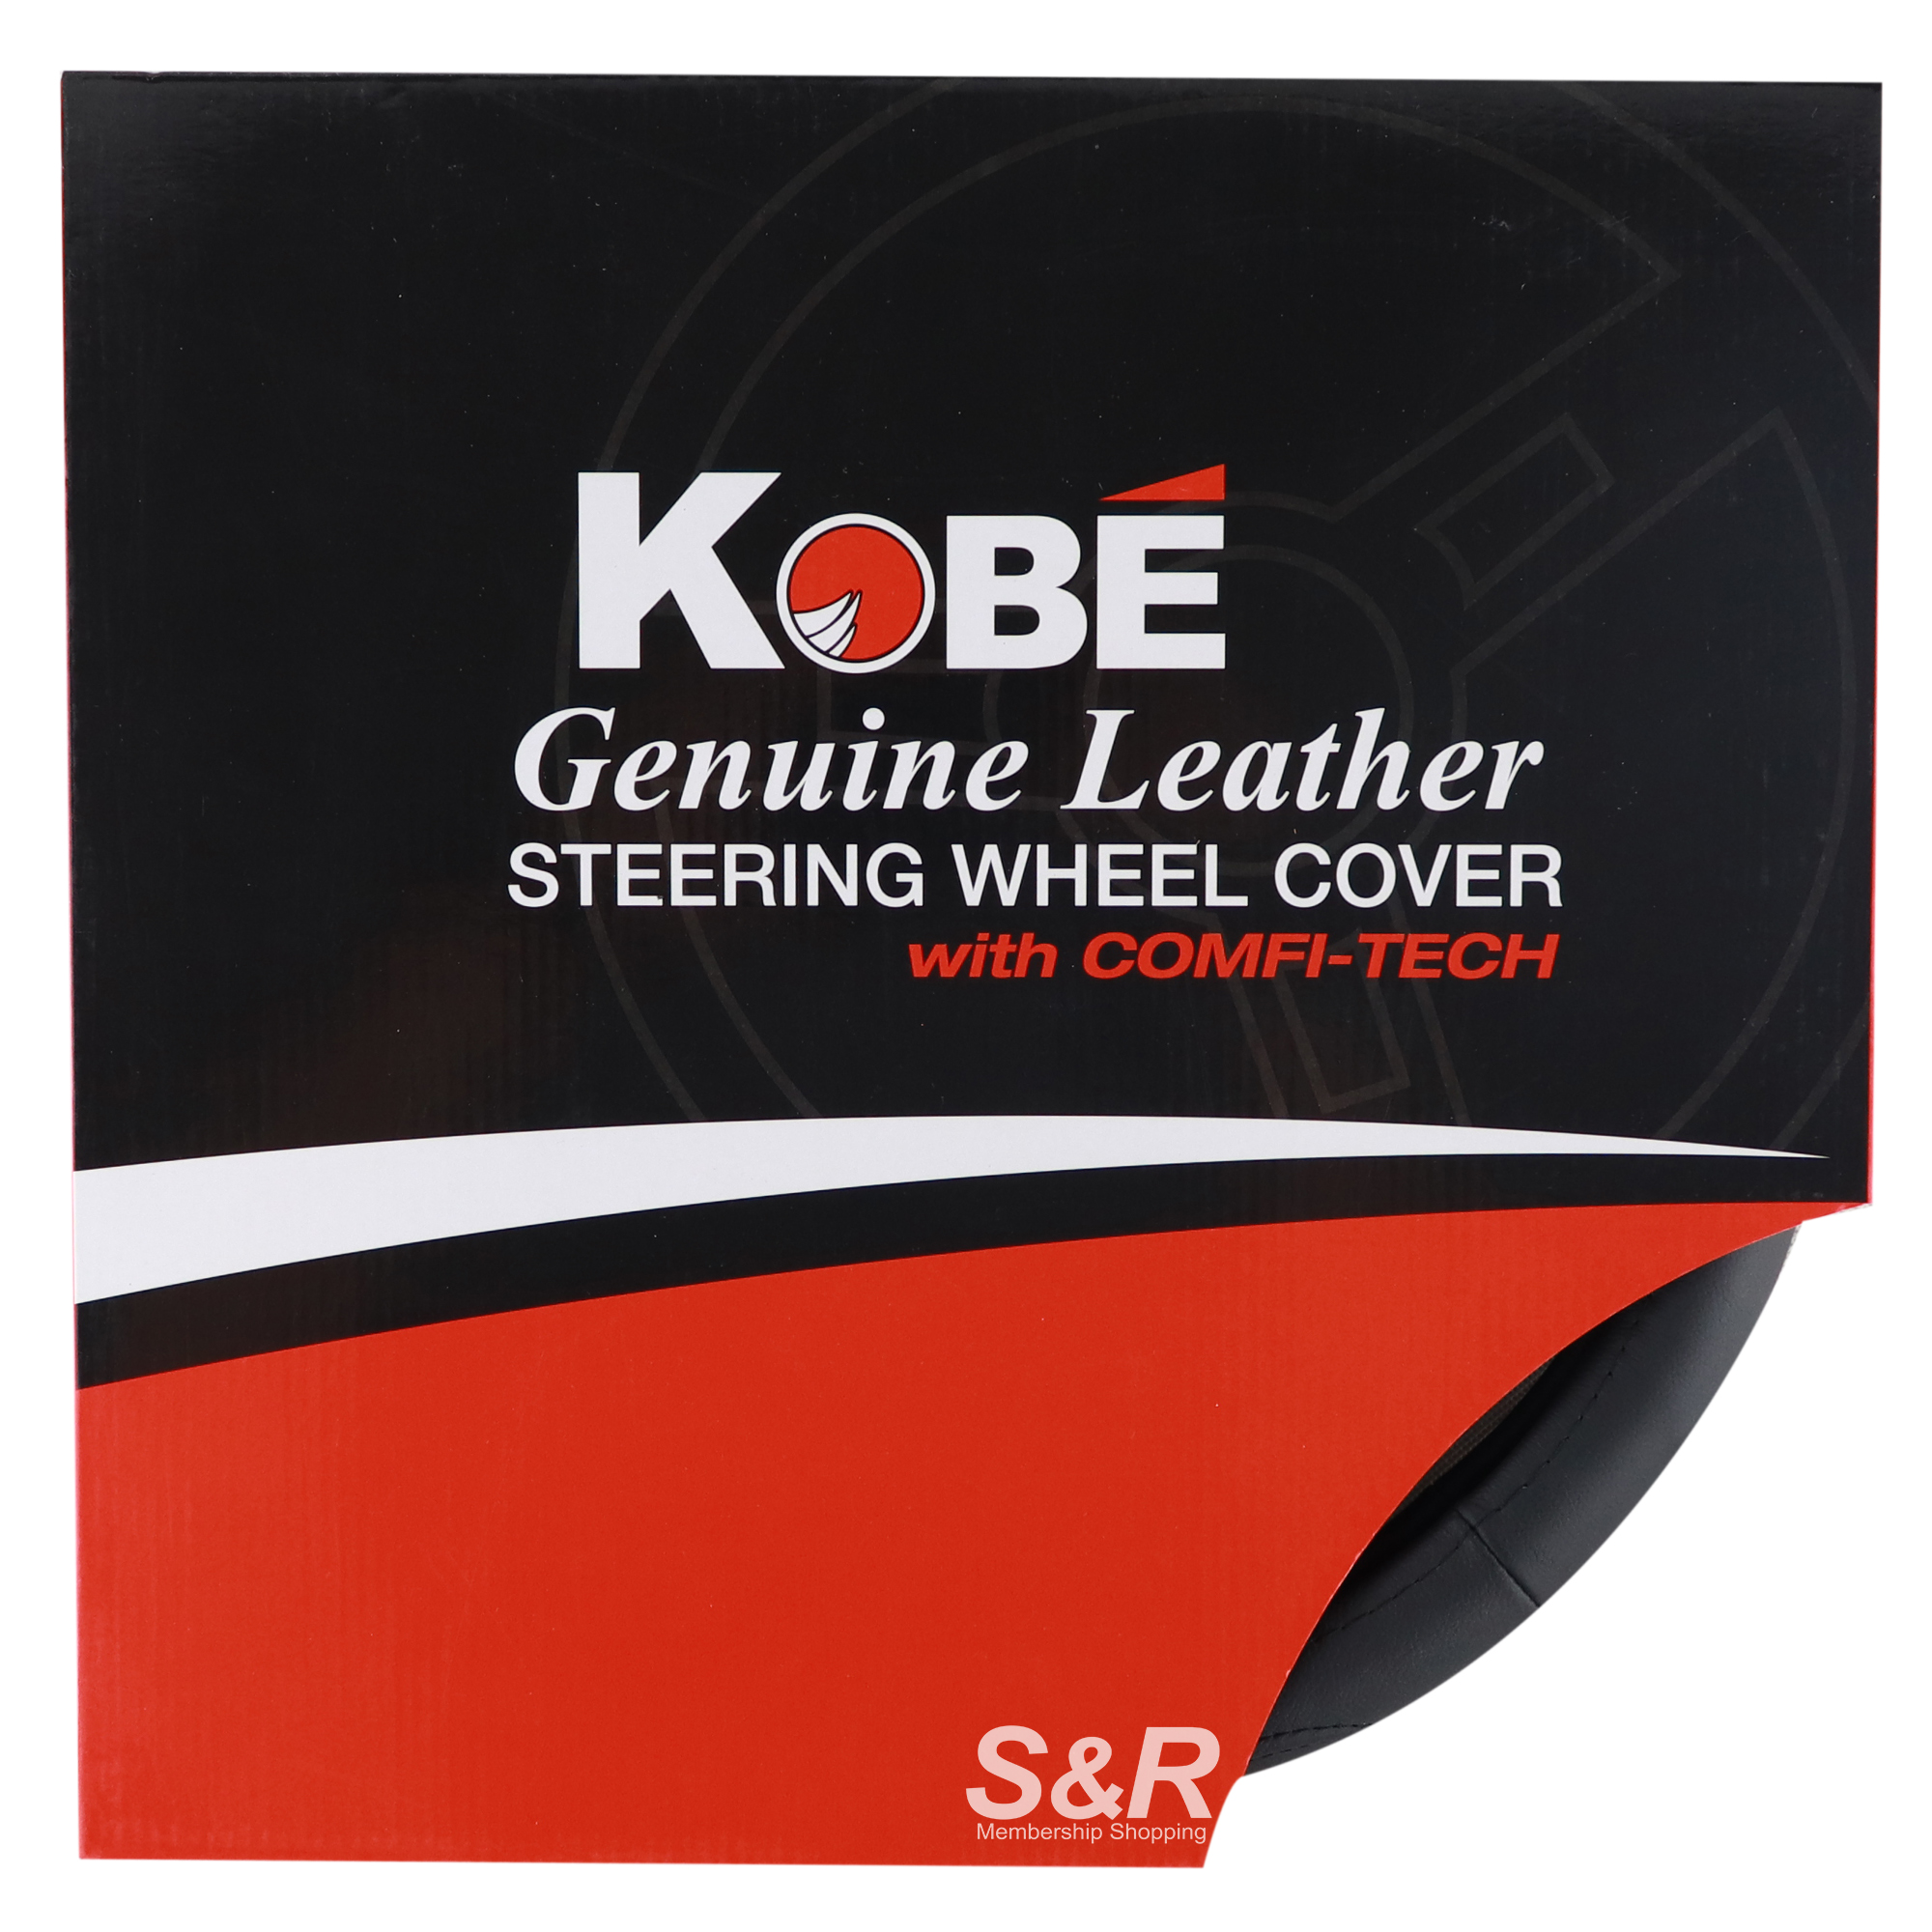 Kobe Genuine Leather Steering Wheel Cover 1pc